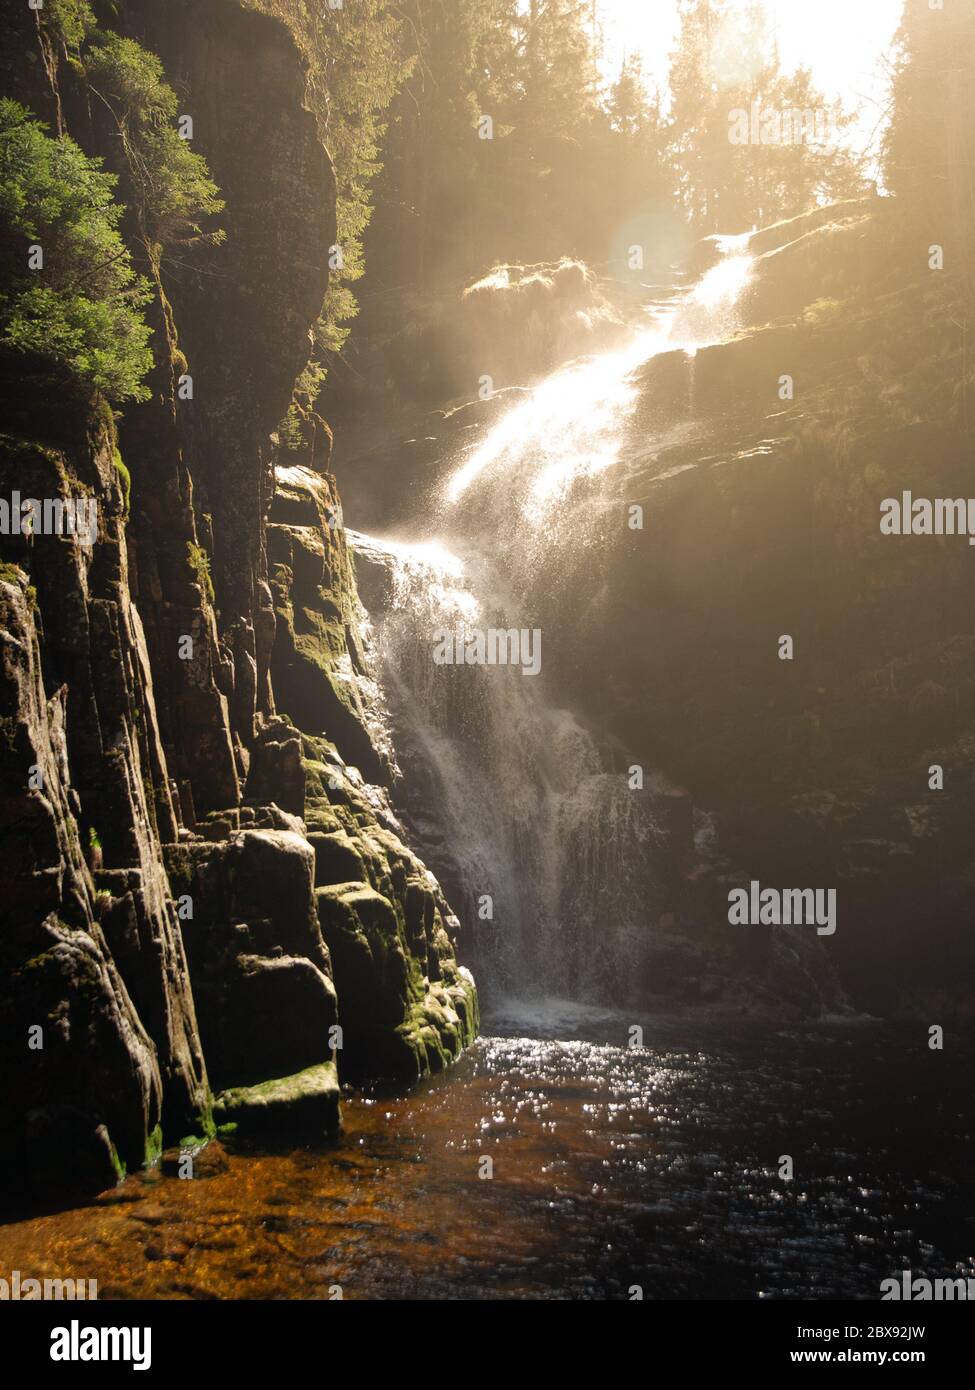 Kamienczyk Wasserfall in der Nähe von SzklarskaPoreba im Riesengebirge oder Karkonosze, Polen. Langzeitbelichtung. Stockfoto